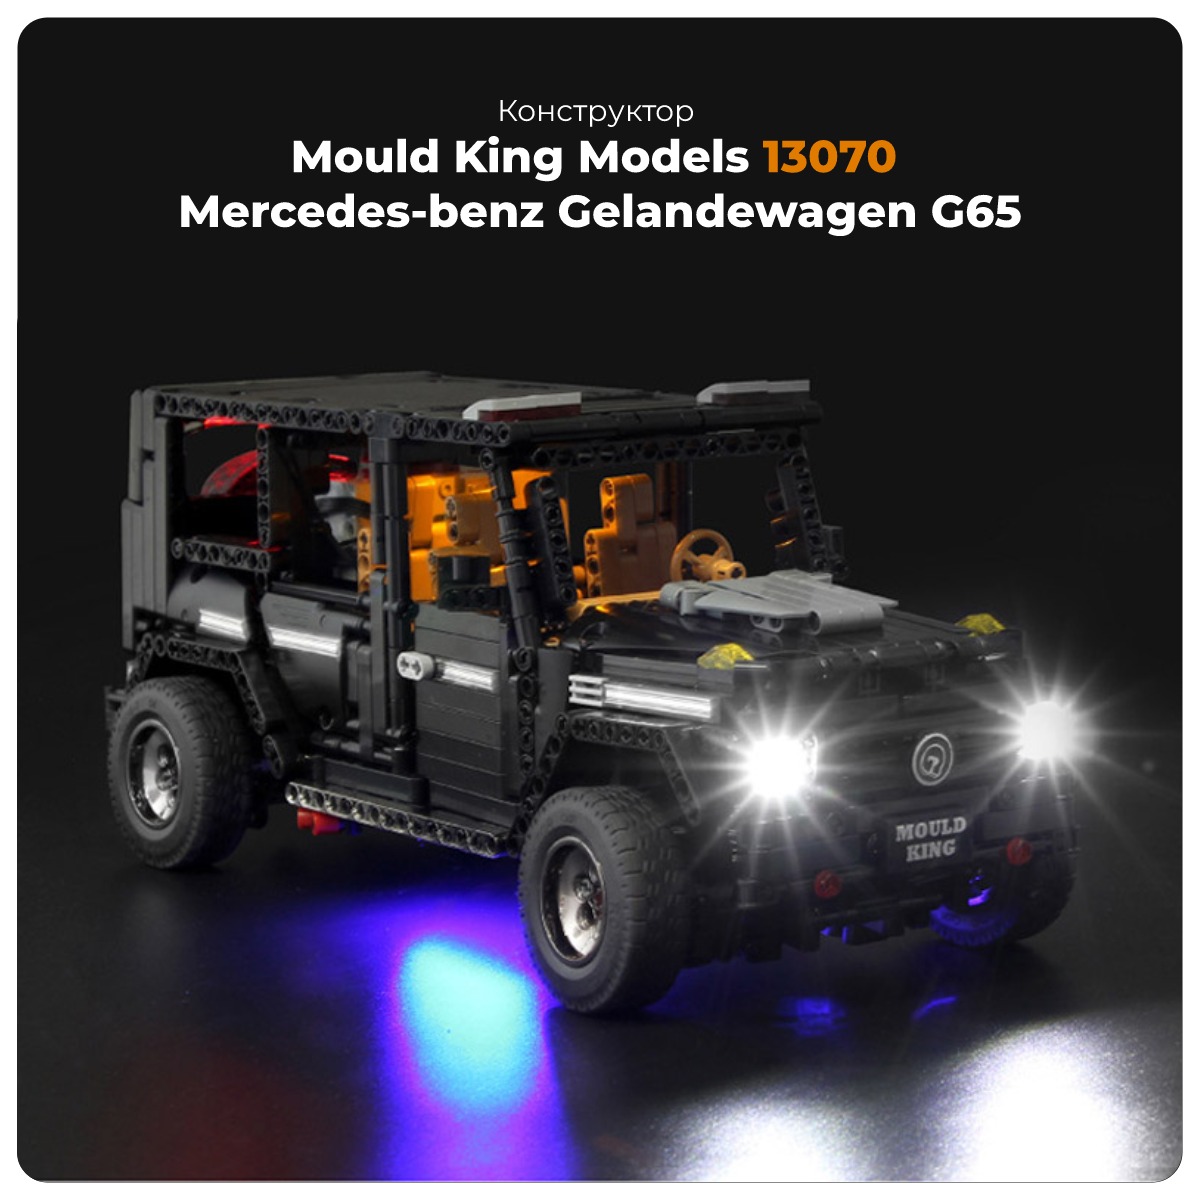 Mould-King-Models-13070-01